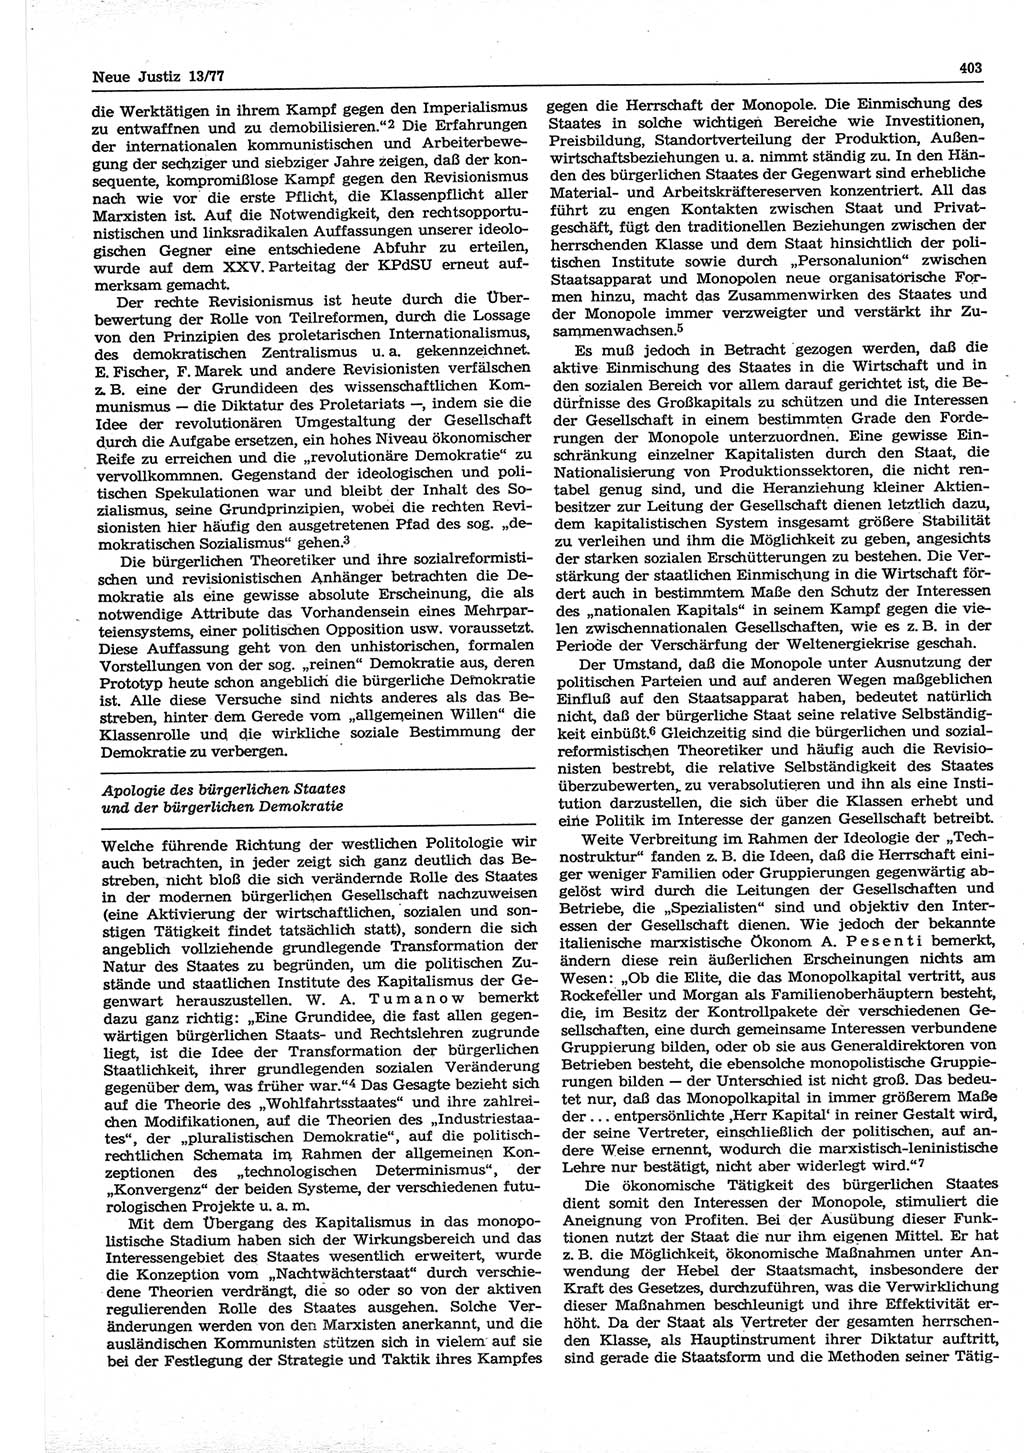 Neue Justiz (NJ), Zeitschrift für Recht und Rechtswissenschaft-Zeitschrift, sozialistisches Recht und Gesetzlichkeit, 31. Jahrgang 1977, Seite 403 (NJ DDR 1977, S. 403)